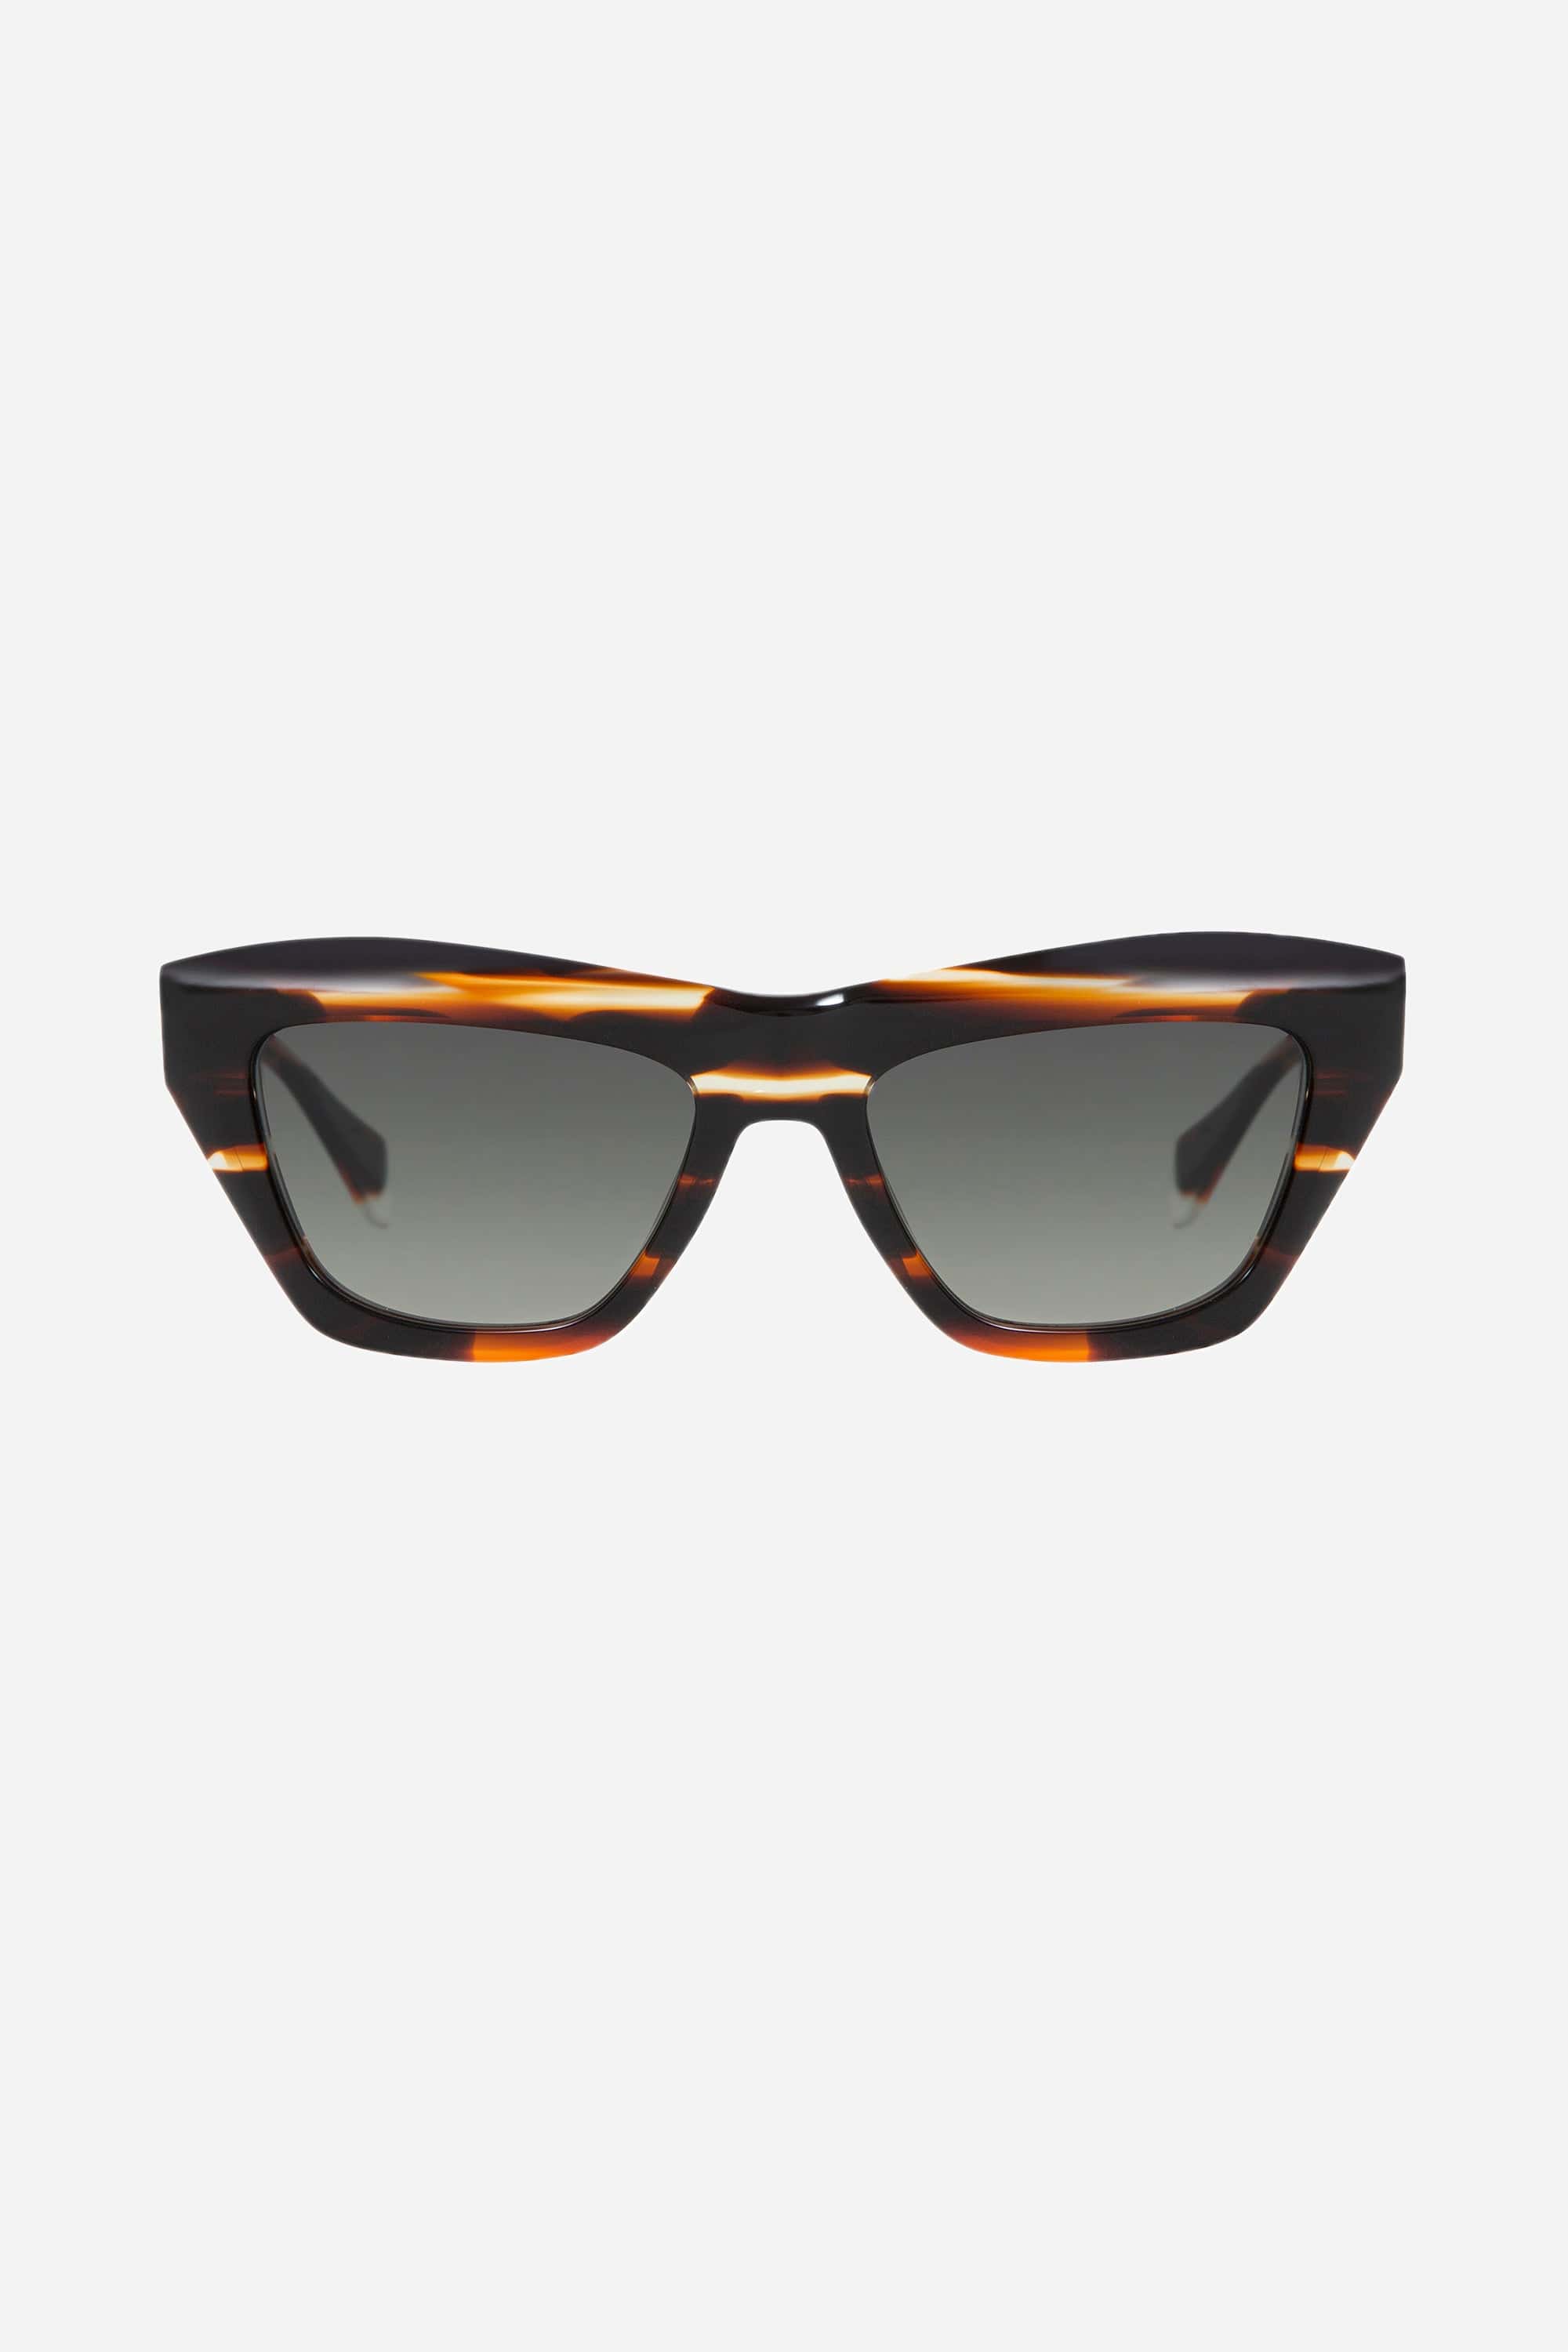 Gigi Studios cat-eye brown bold sunglasses - Eyewear Club